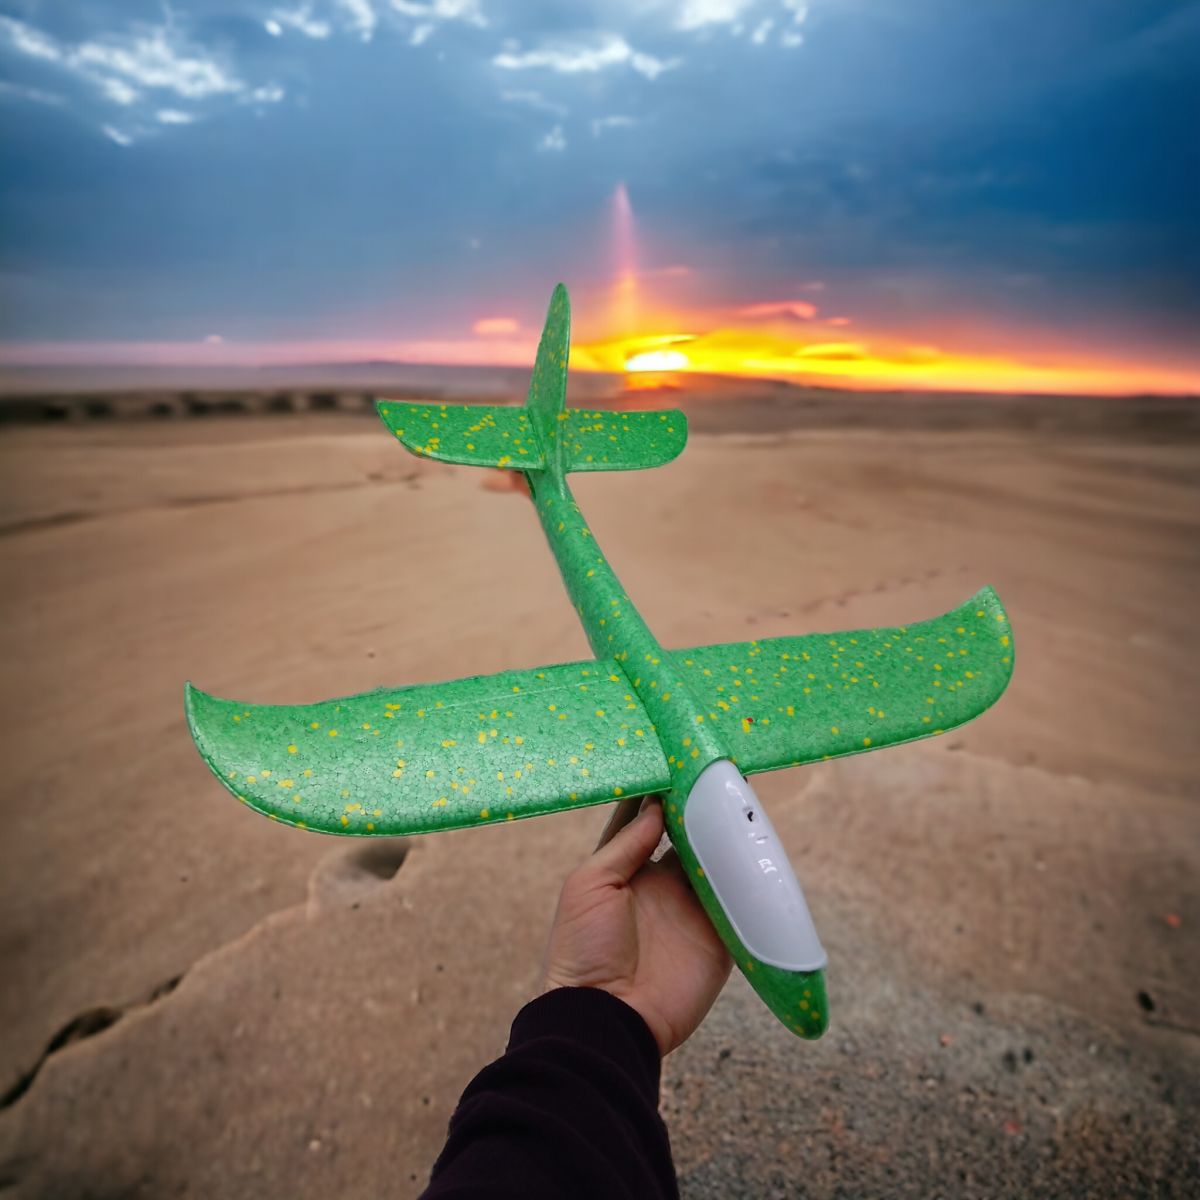 Пенопластовый самолет пенолет, 48 см, со светом (зеленый)